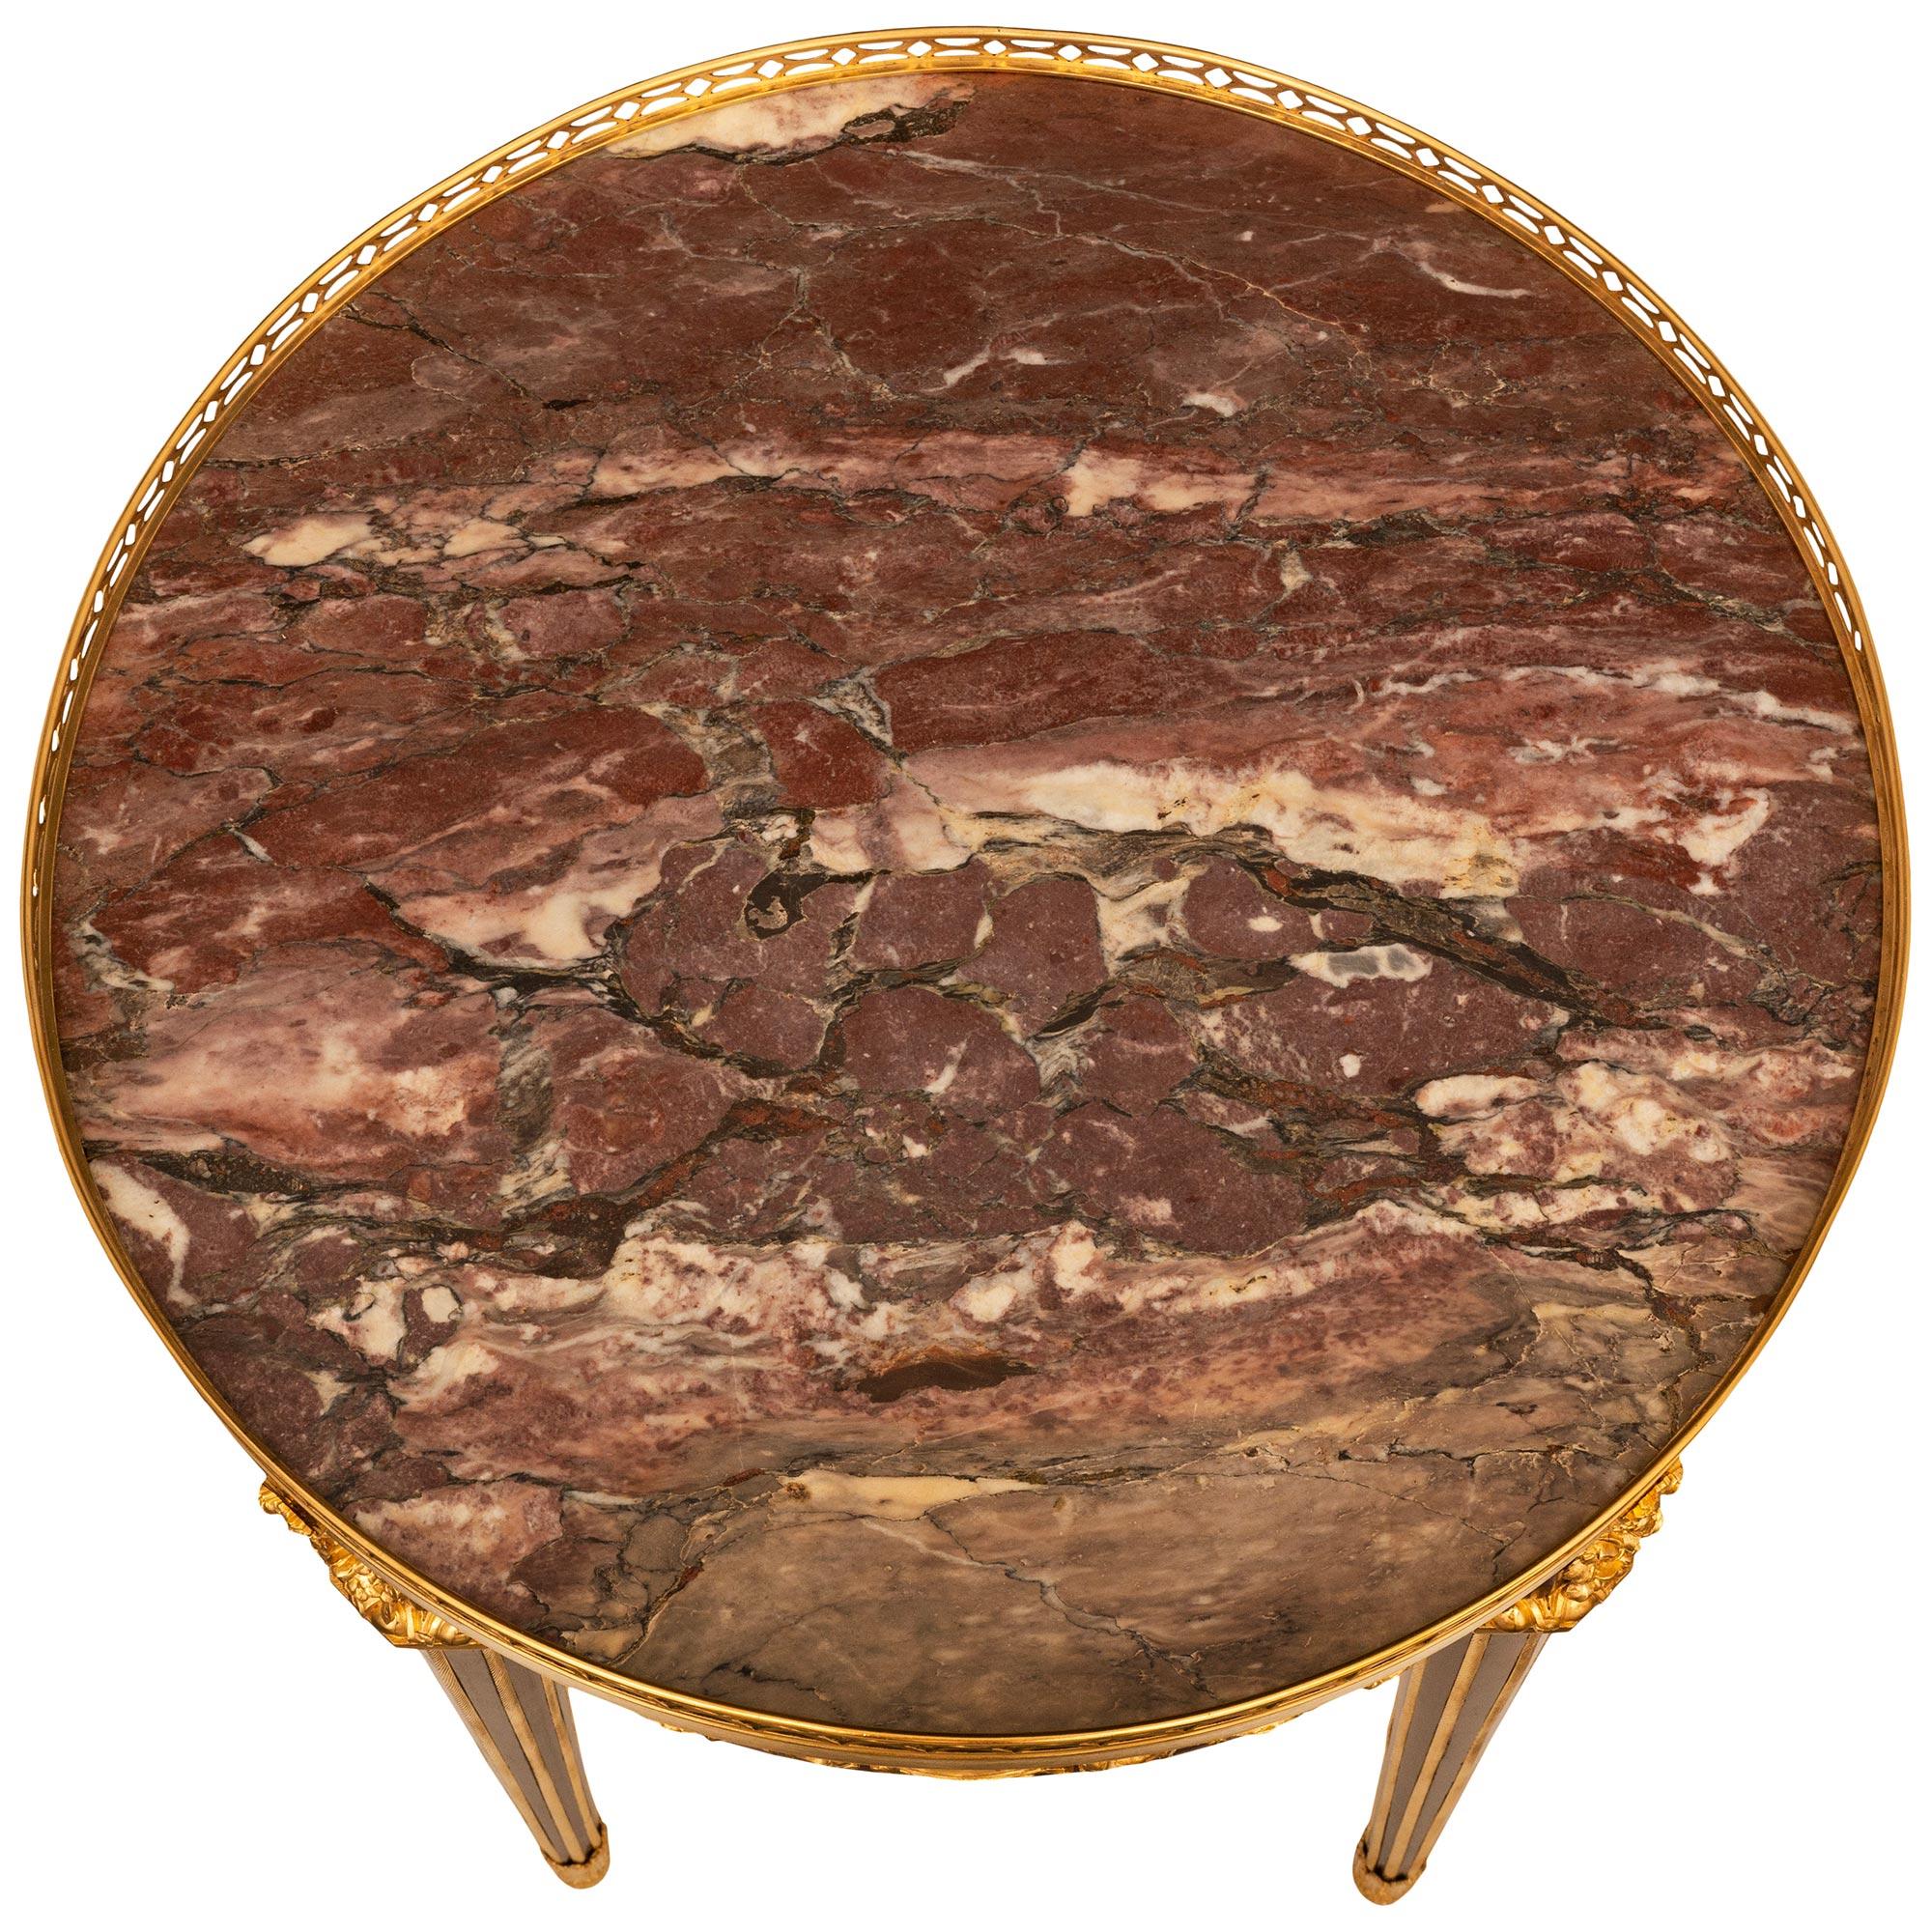 Étonnante table d'appoint du XIXe siècle de style Louis XVI en acajou, satiné, bronze doré et marbre de Violette, attribuée à Théodore Millet. Cette exquise table d'appoint circulaire à un tiroir repose sur quatre pieds octogonaux fuselés en acajou